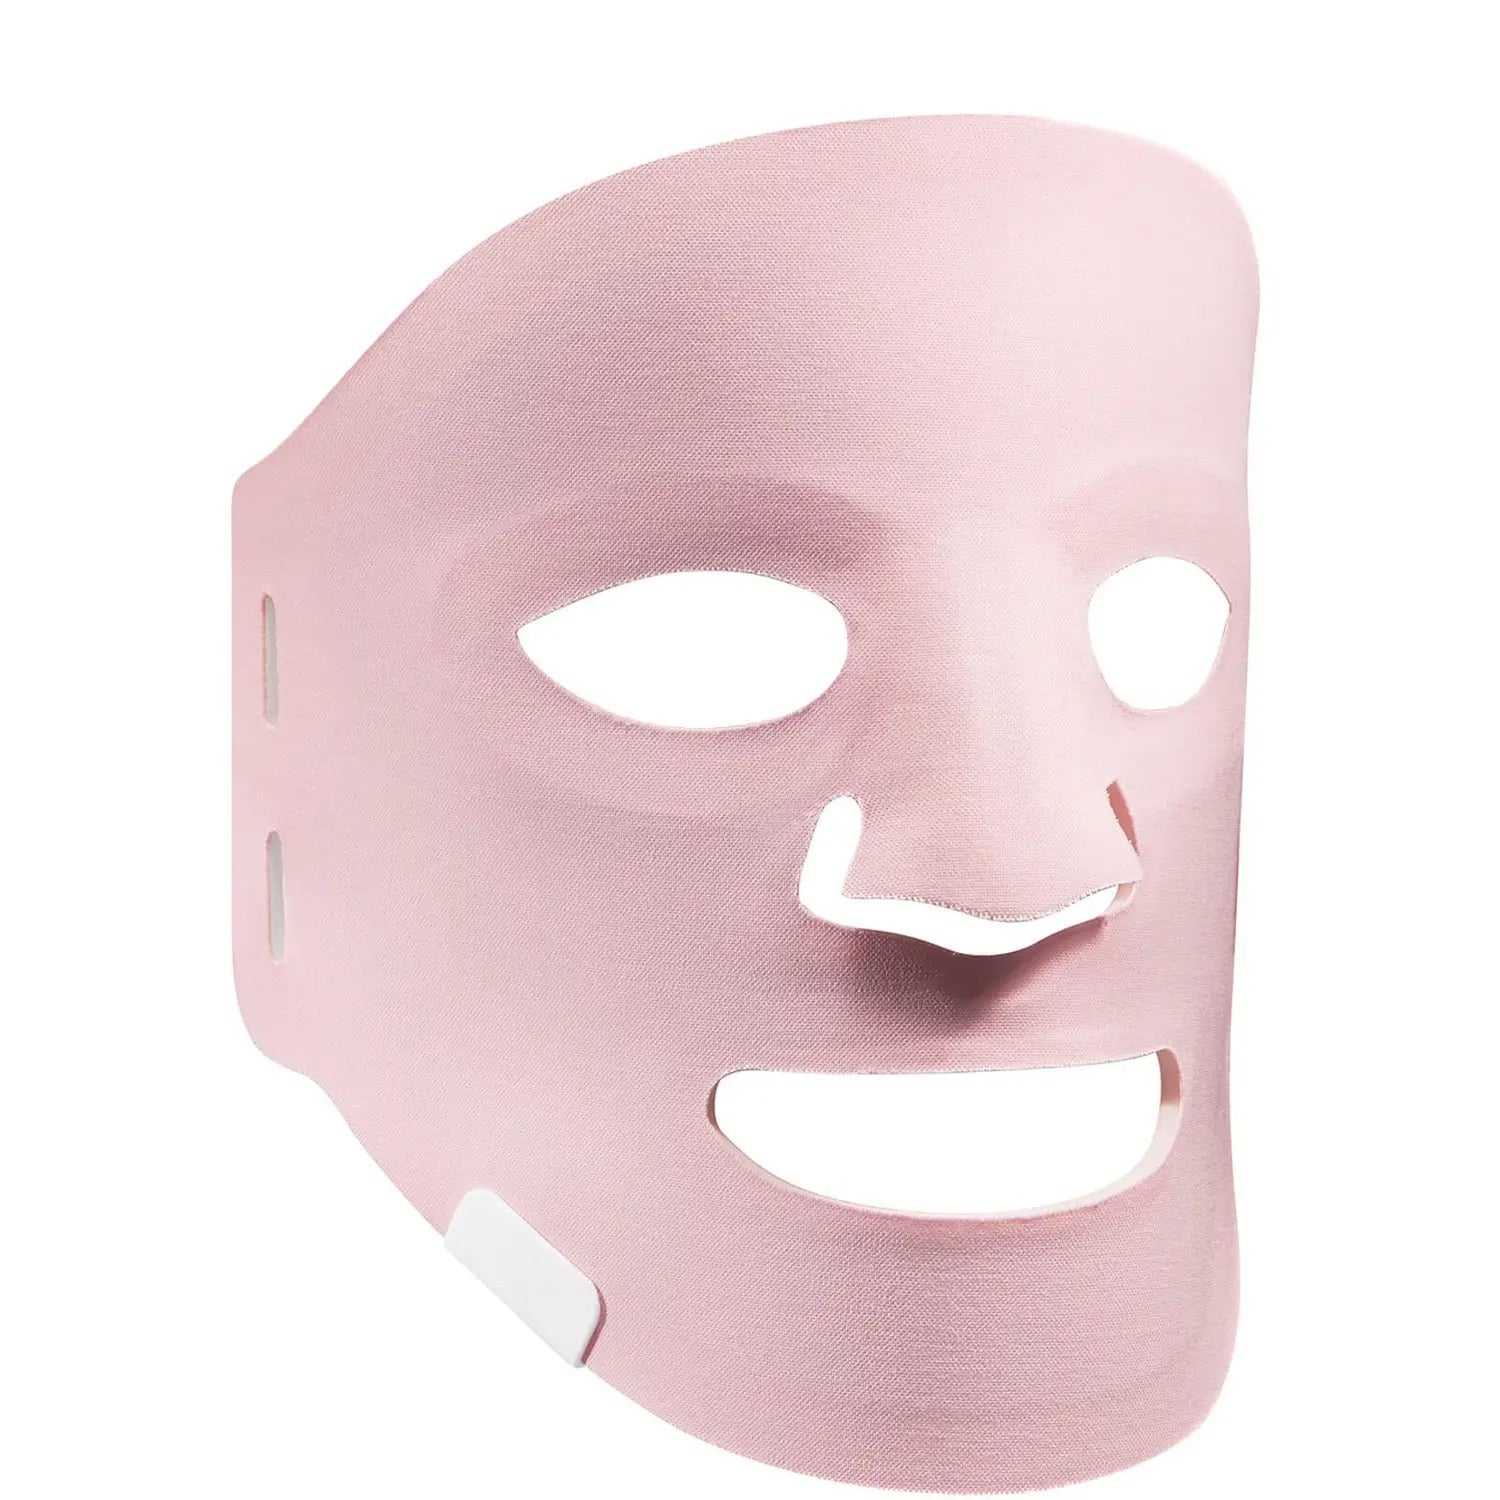 SENSSE LED Face Mask